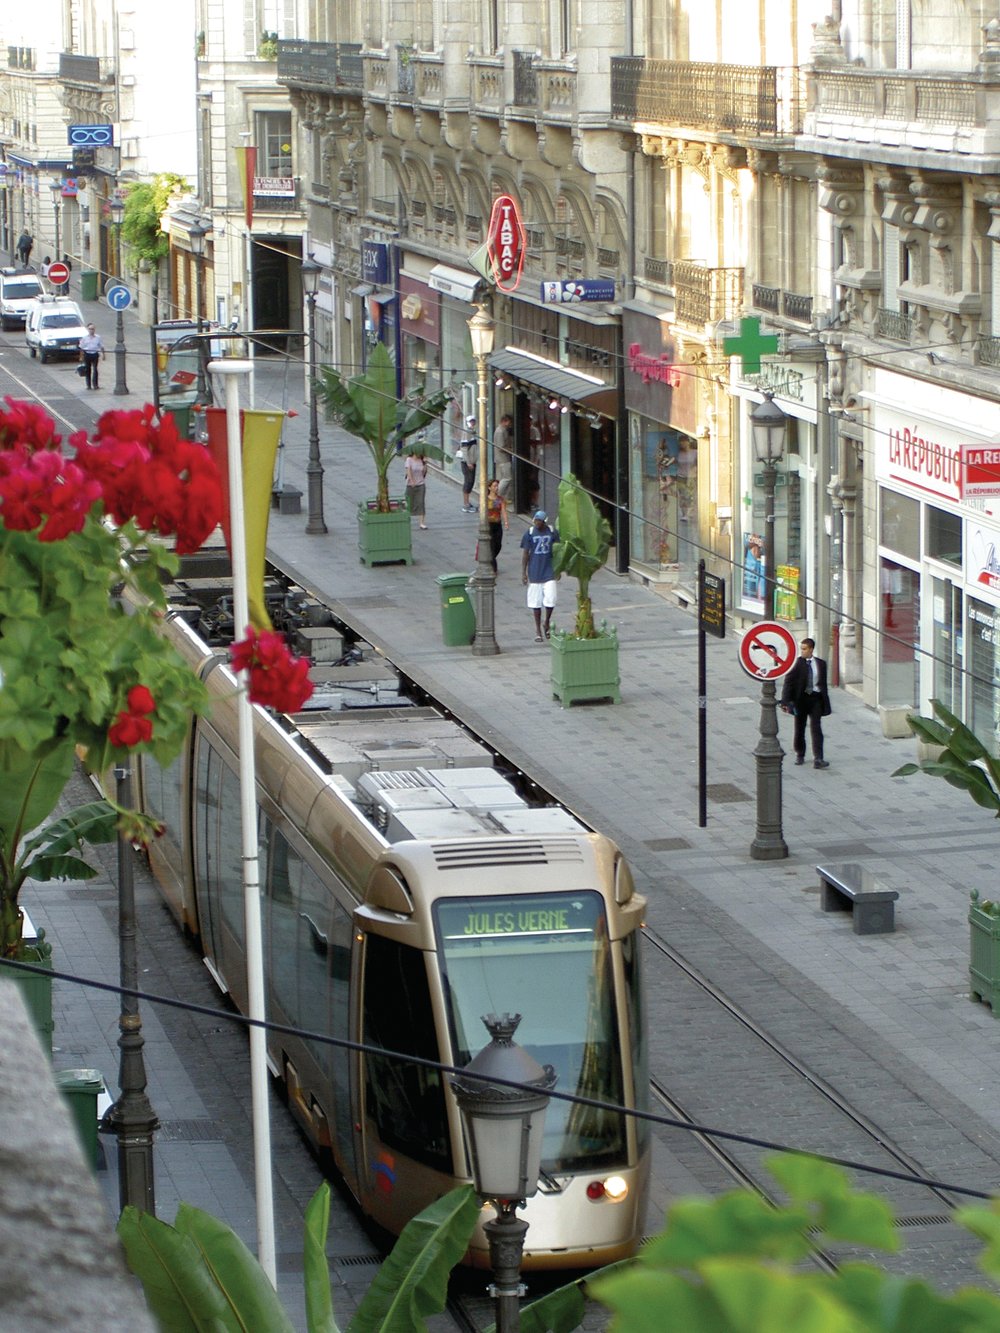 A tram makes a city livable!